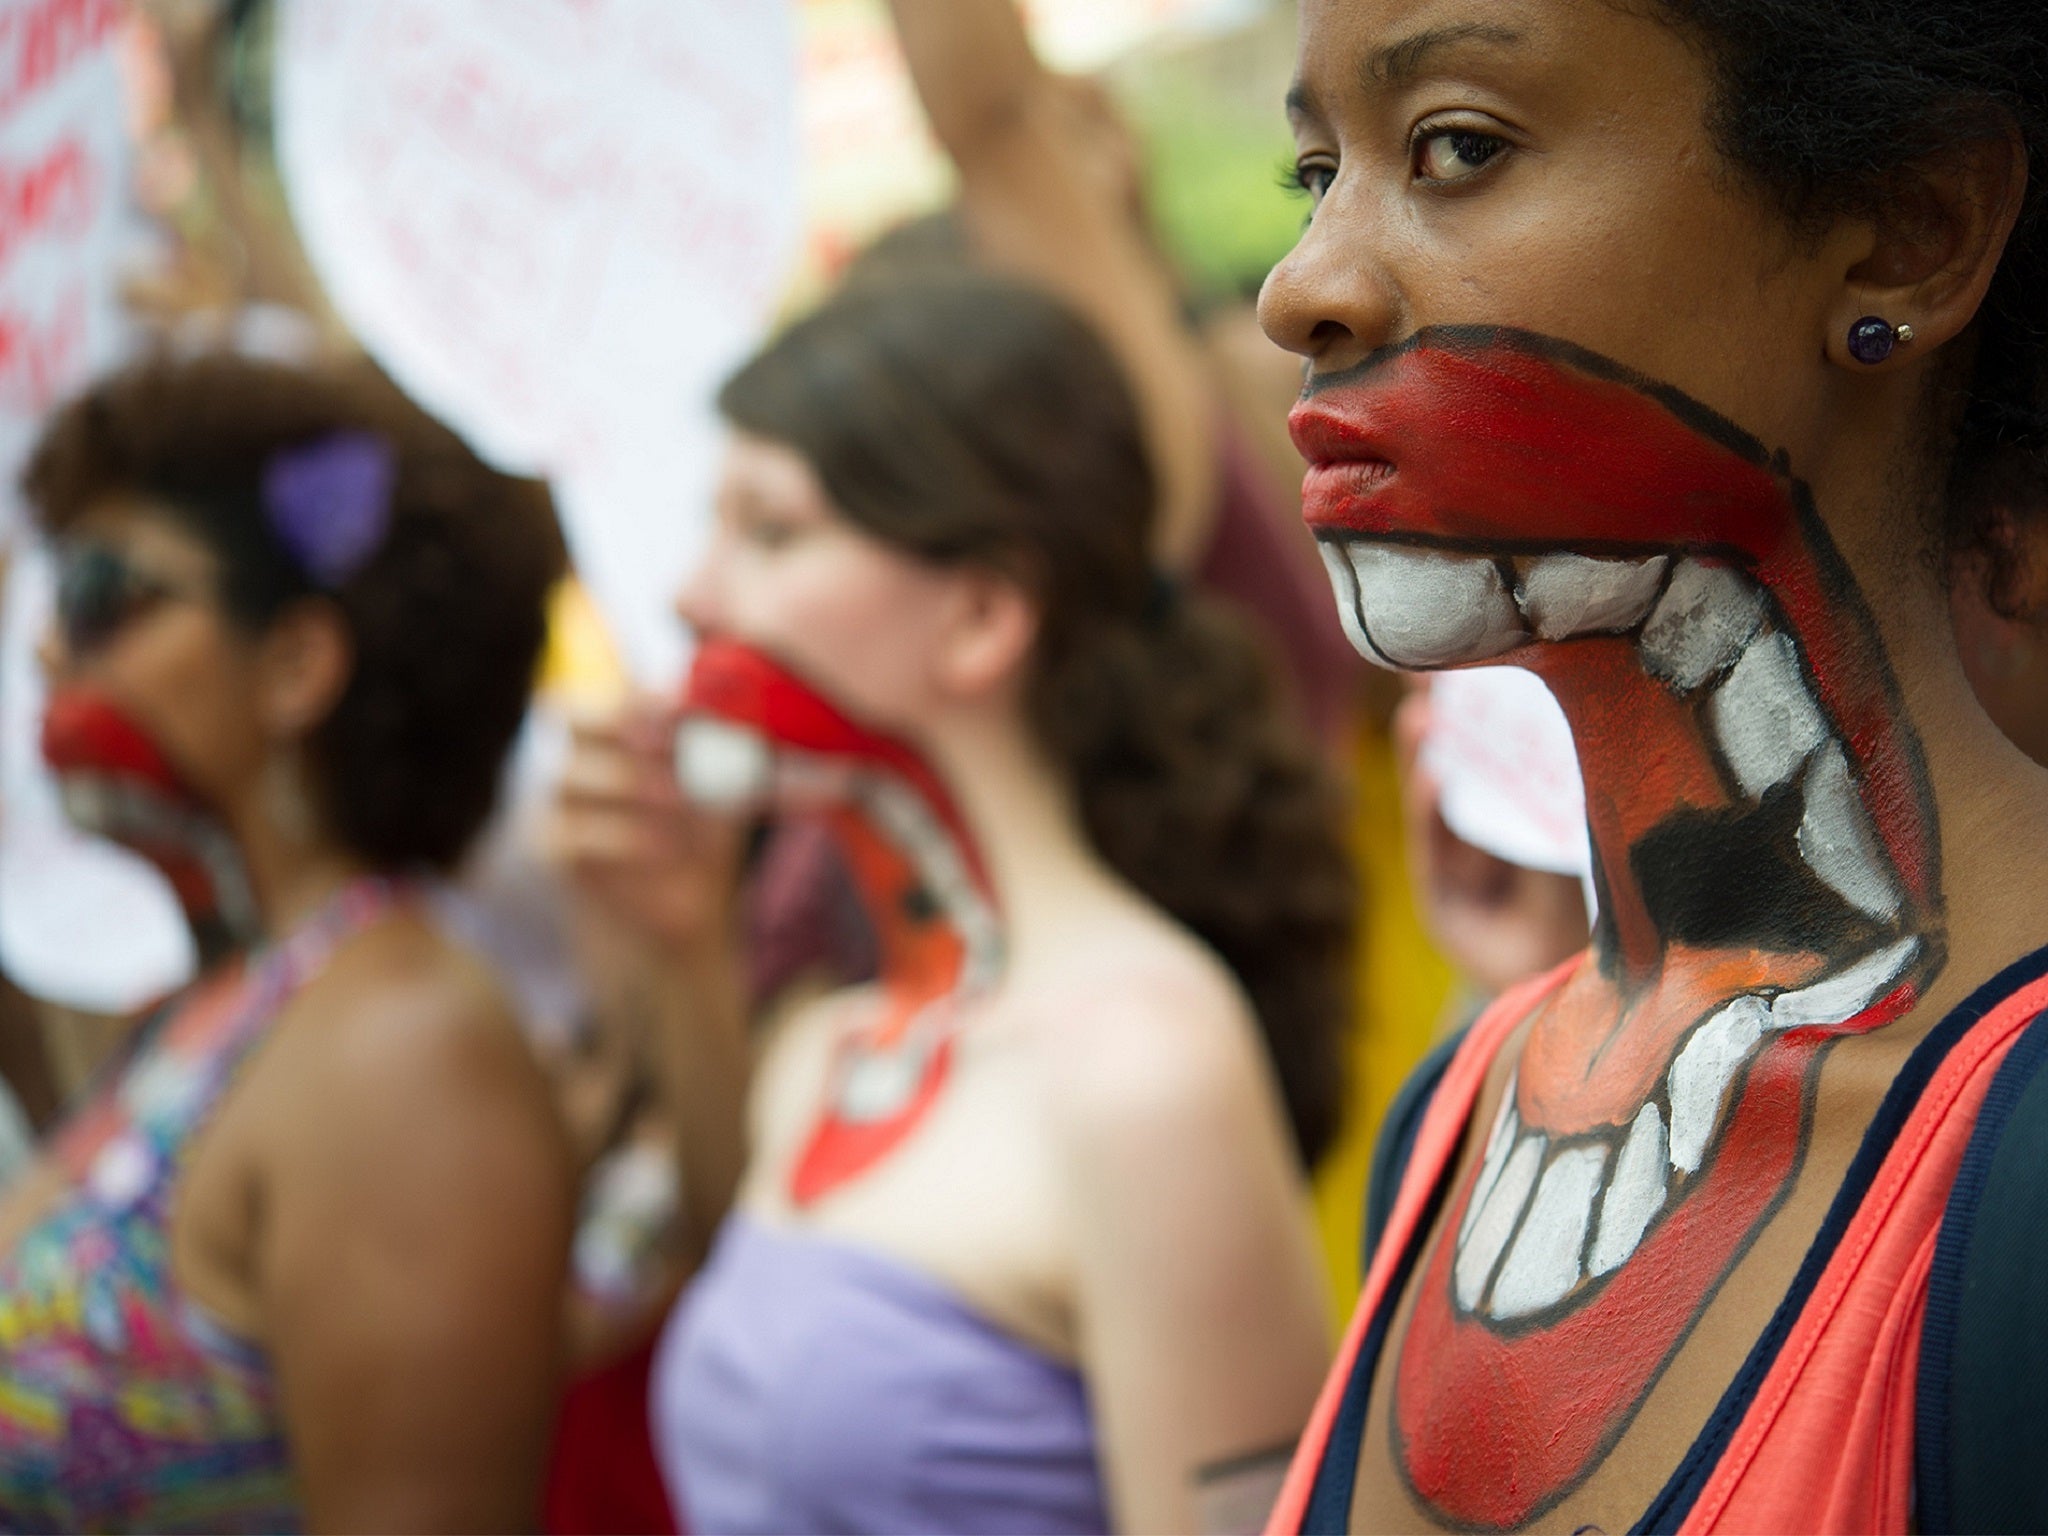 Brazilian women protest domestic violence